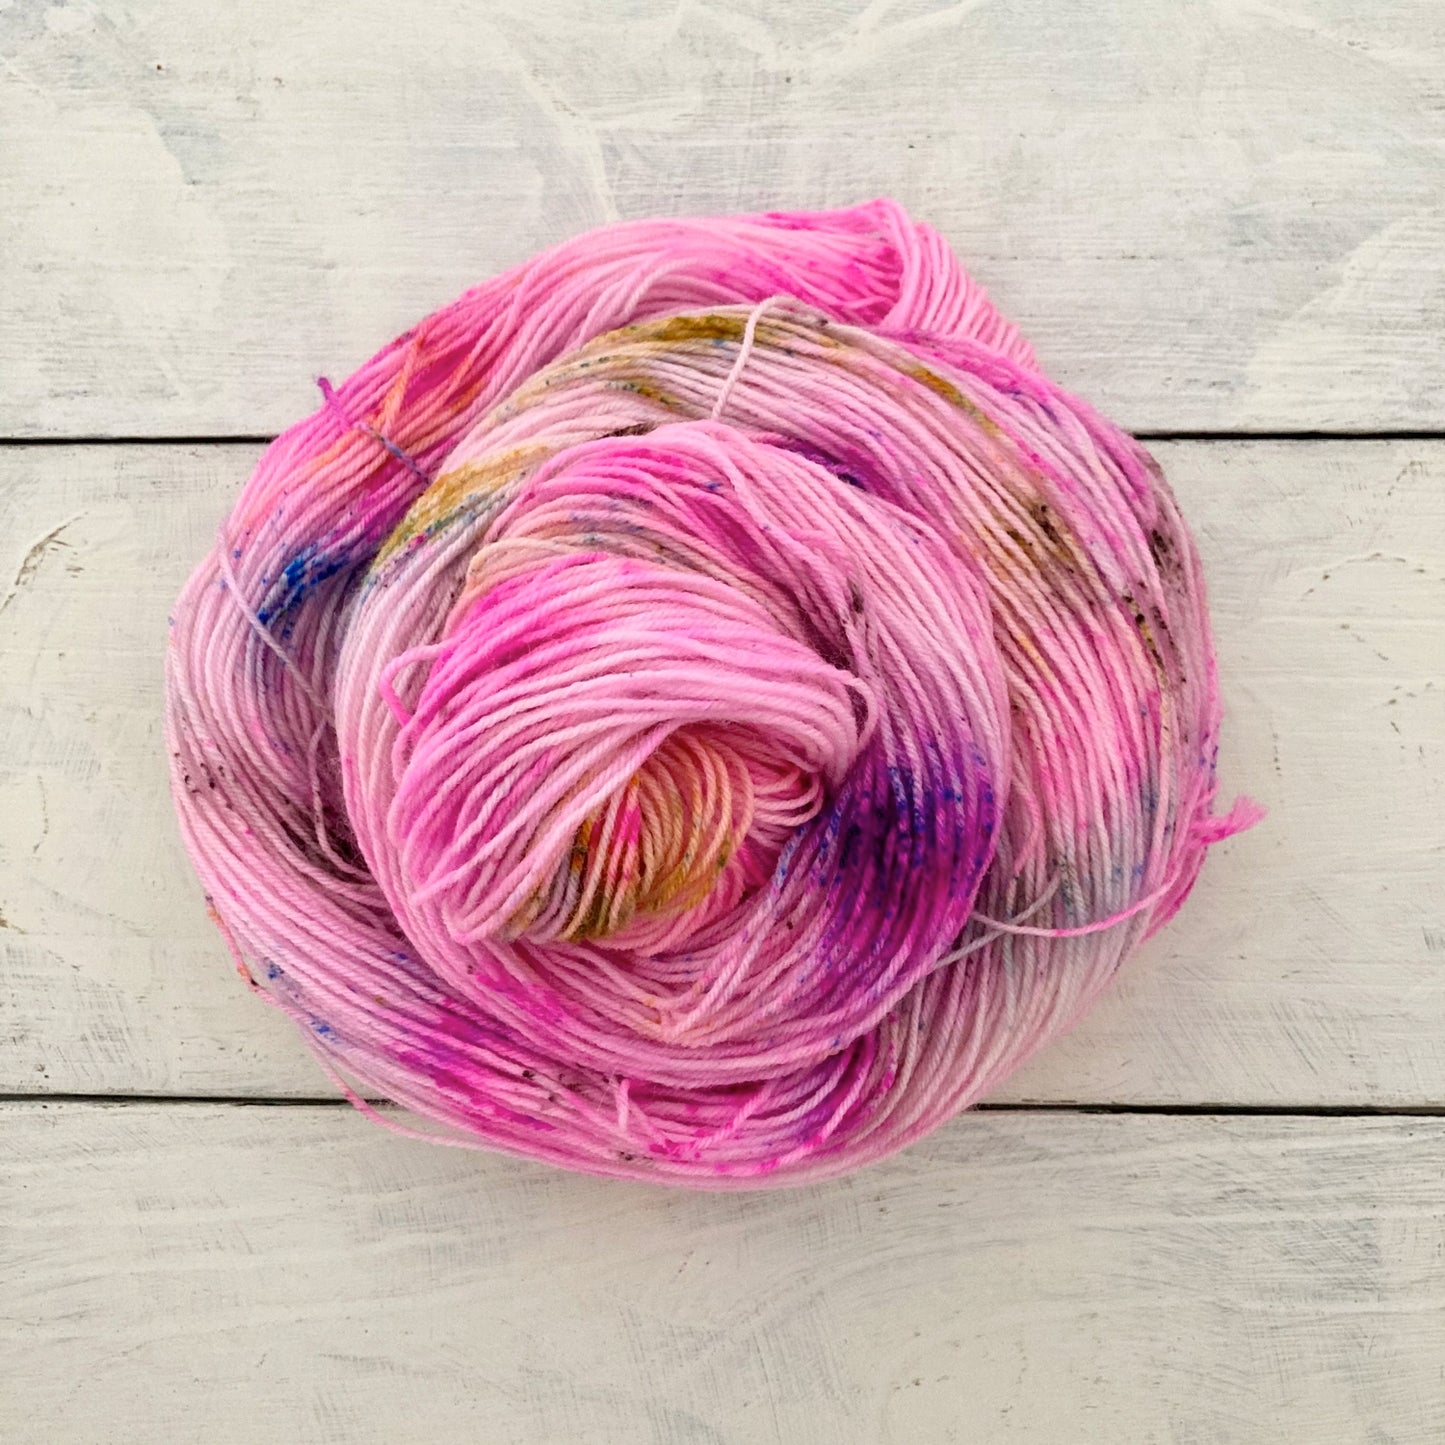 Hand-dyed yarn No.144 sock yarn "Waltz of Flowers"